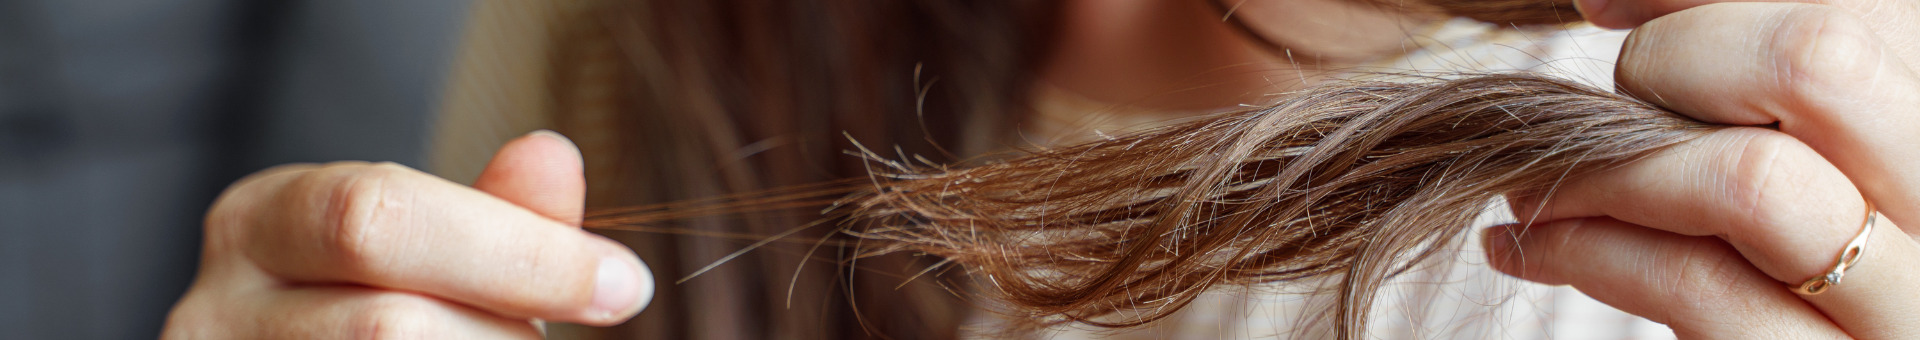 Cheveux fins et perte de densité : comment retrouver du volume ?